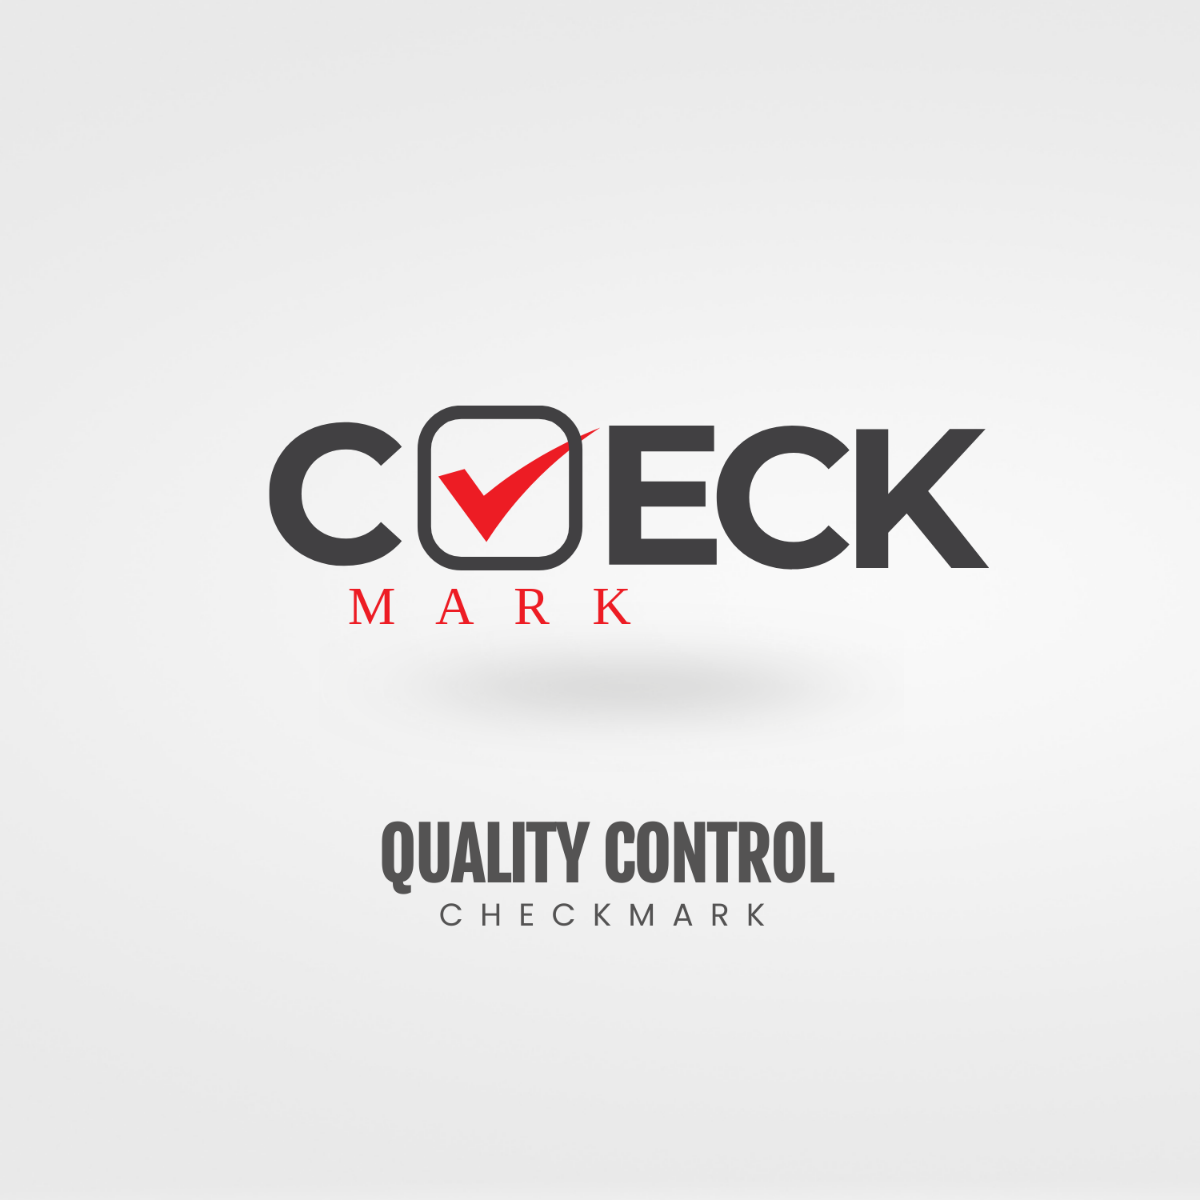 Free Quality Control Checkmark Logo Template